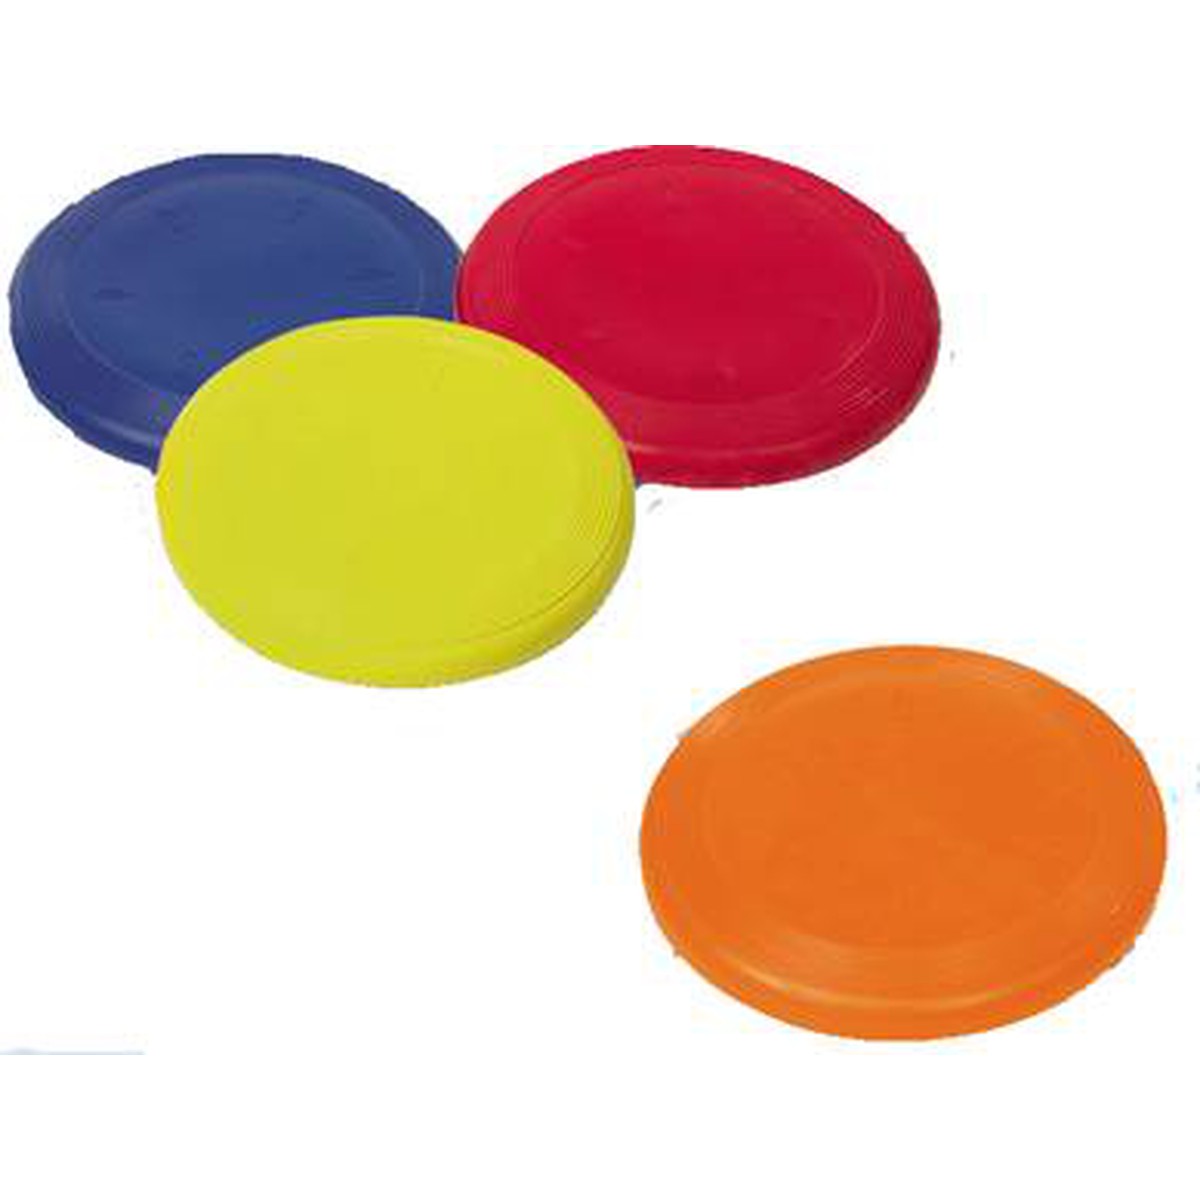   Frisbee en caoutchouc. Ø 19 cm. col. ass  Ø 19 cm